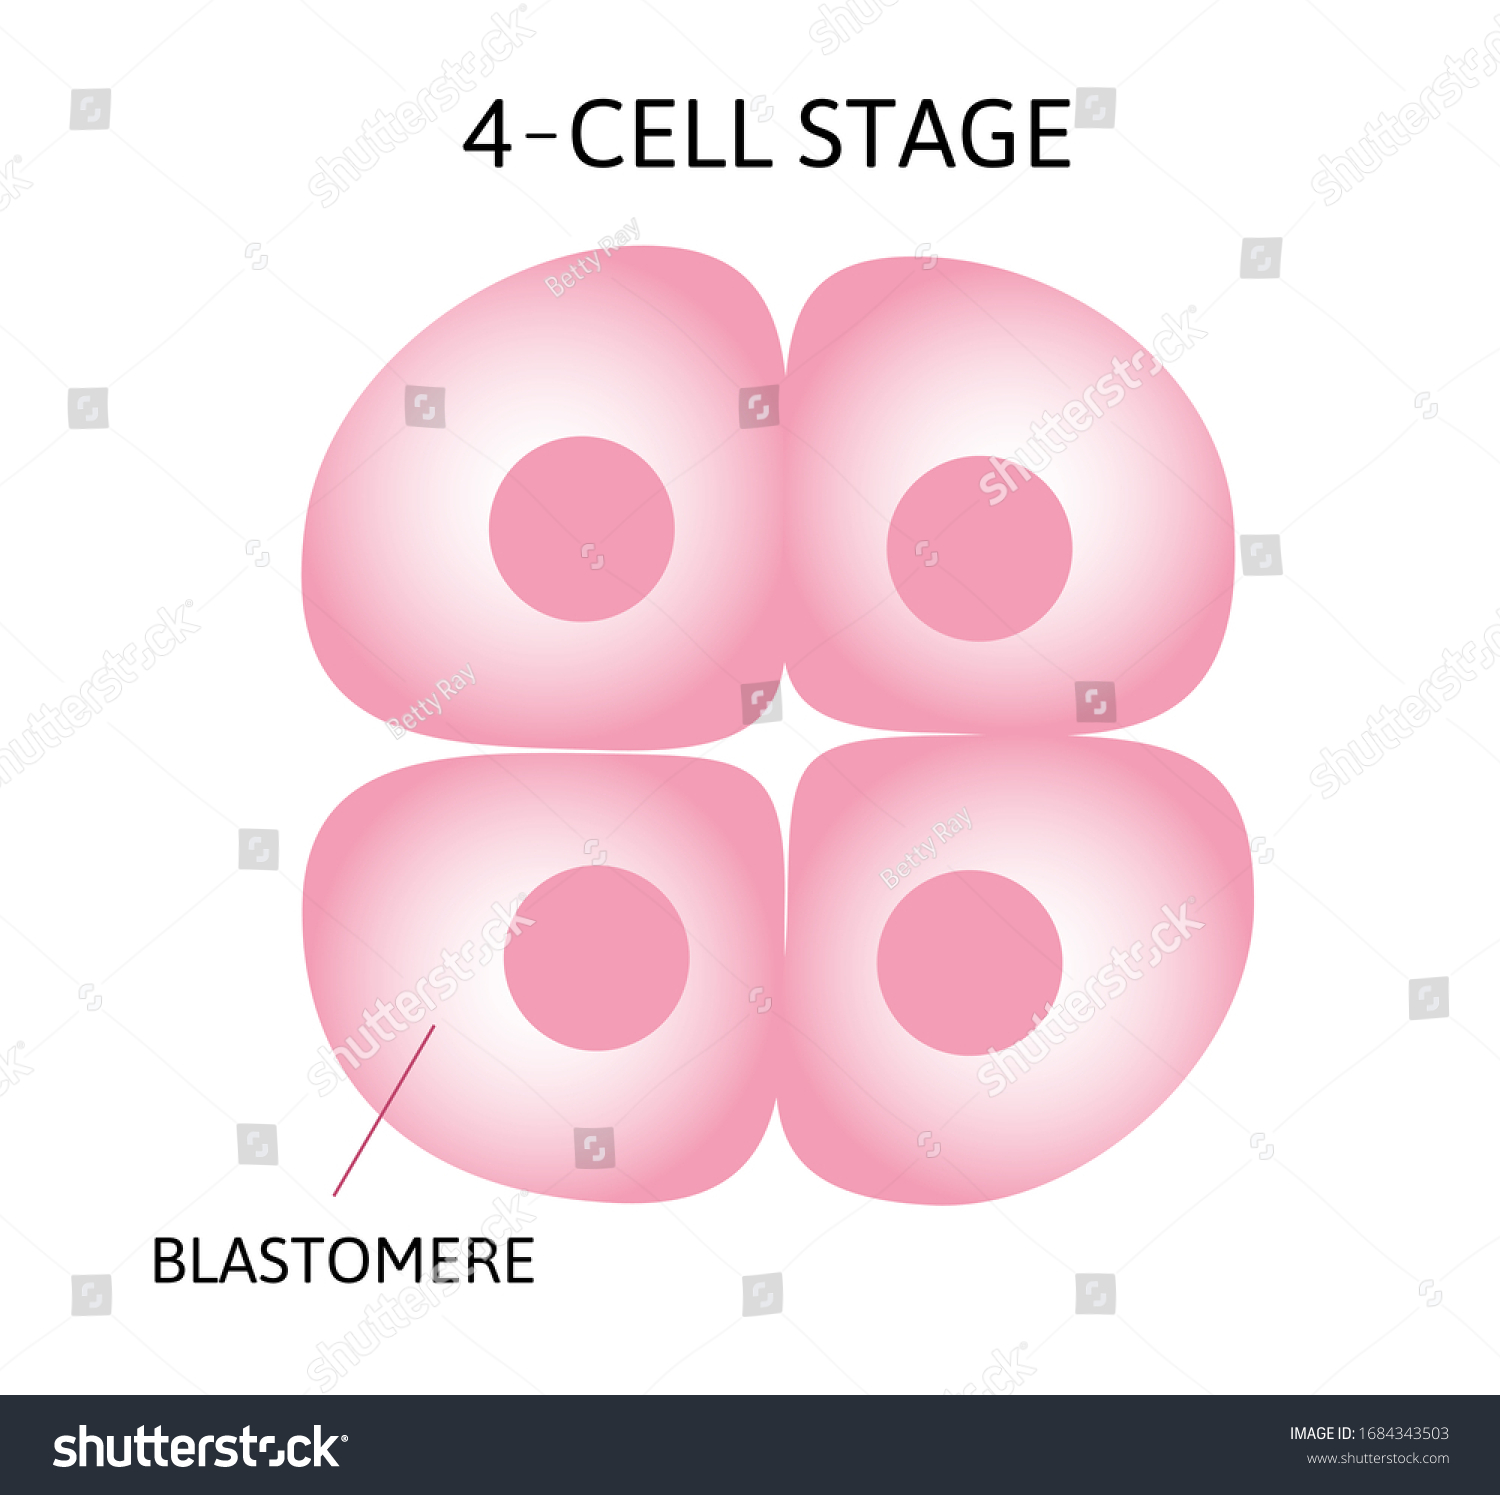 ヒトの胚発生、または、接合体から原腸胚に至るヒトの胚発生。4セルステージ。ベクター画像医療イラスト